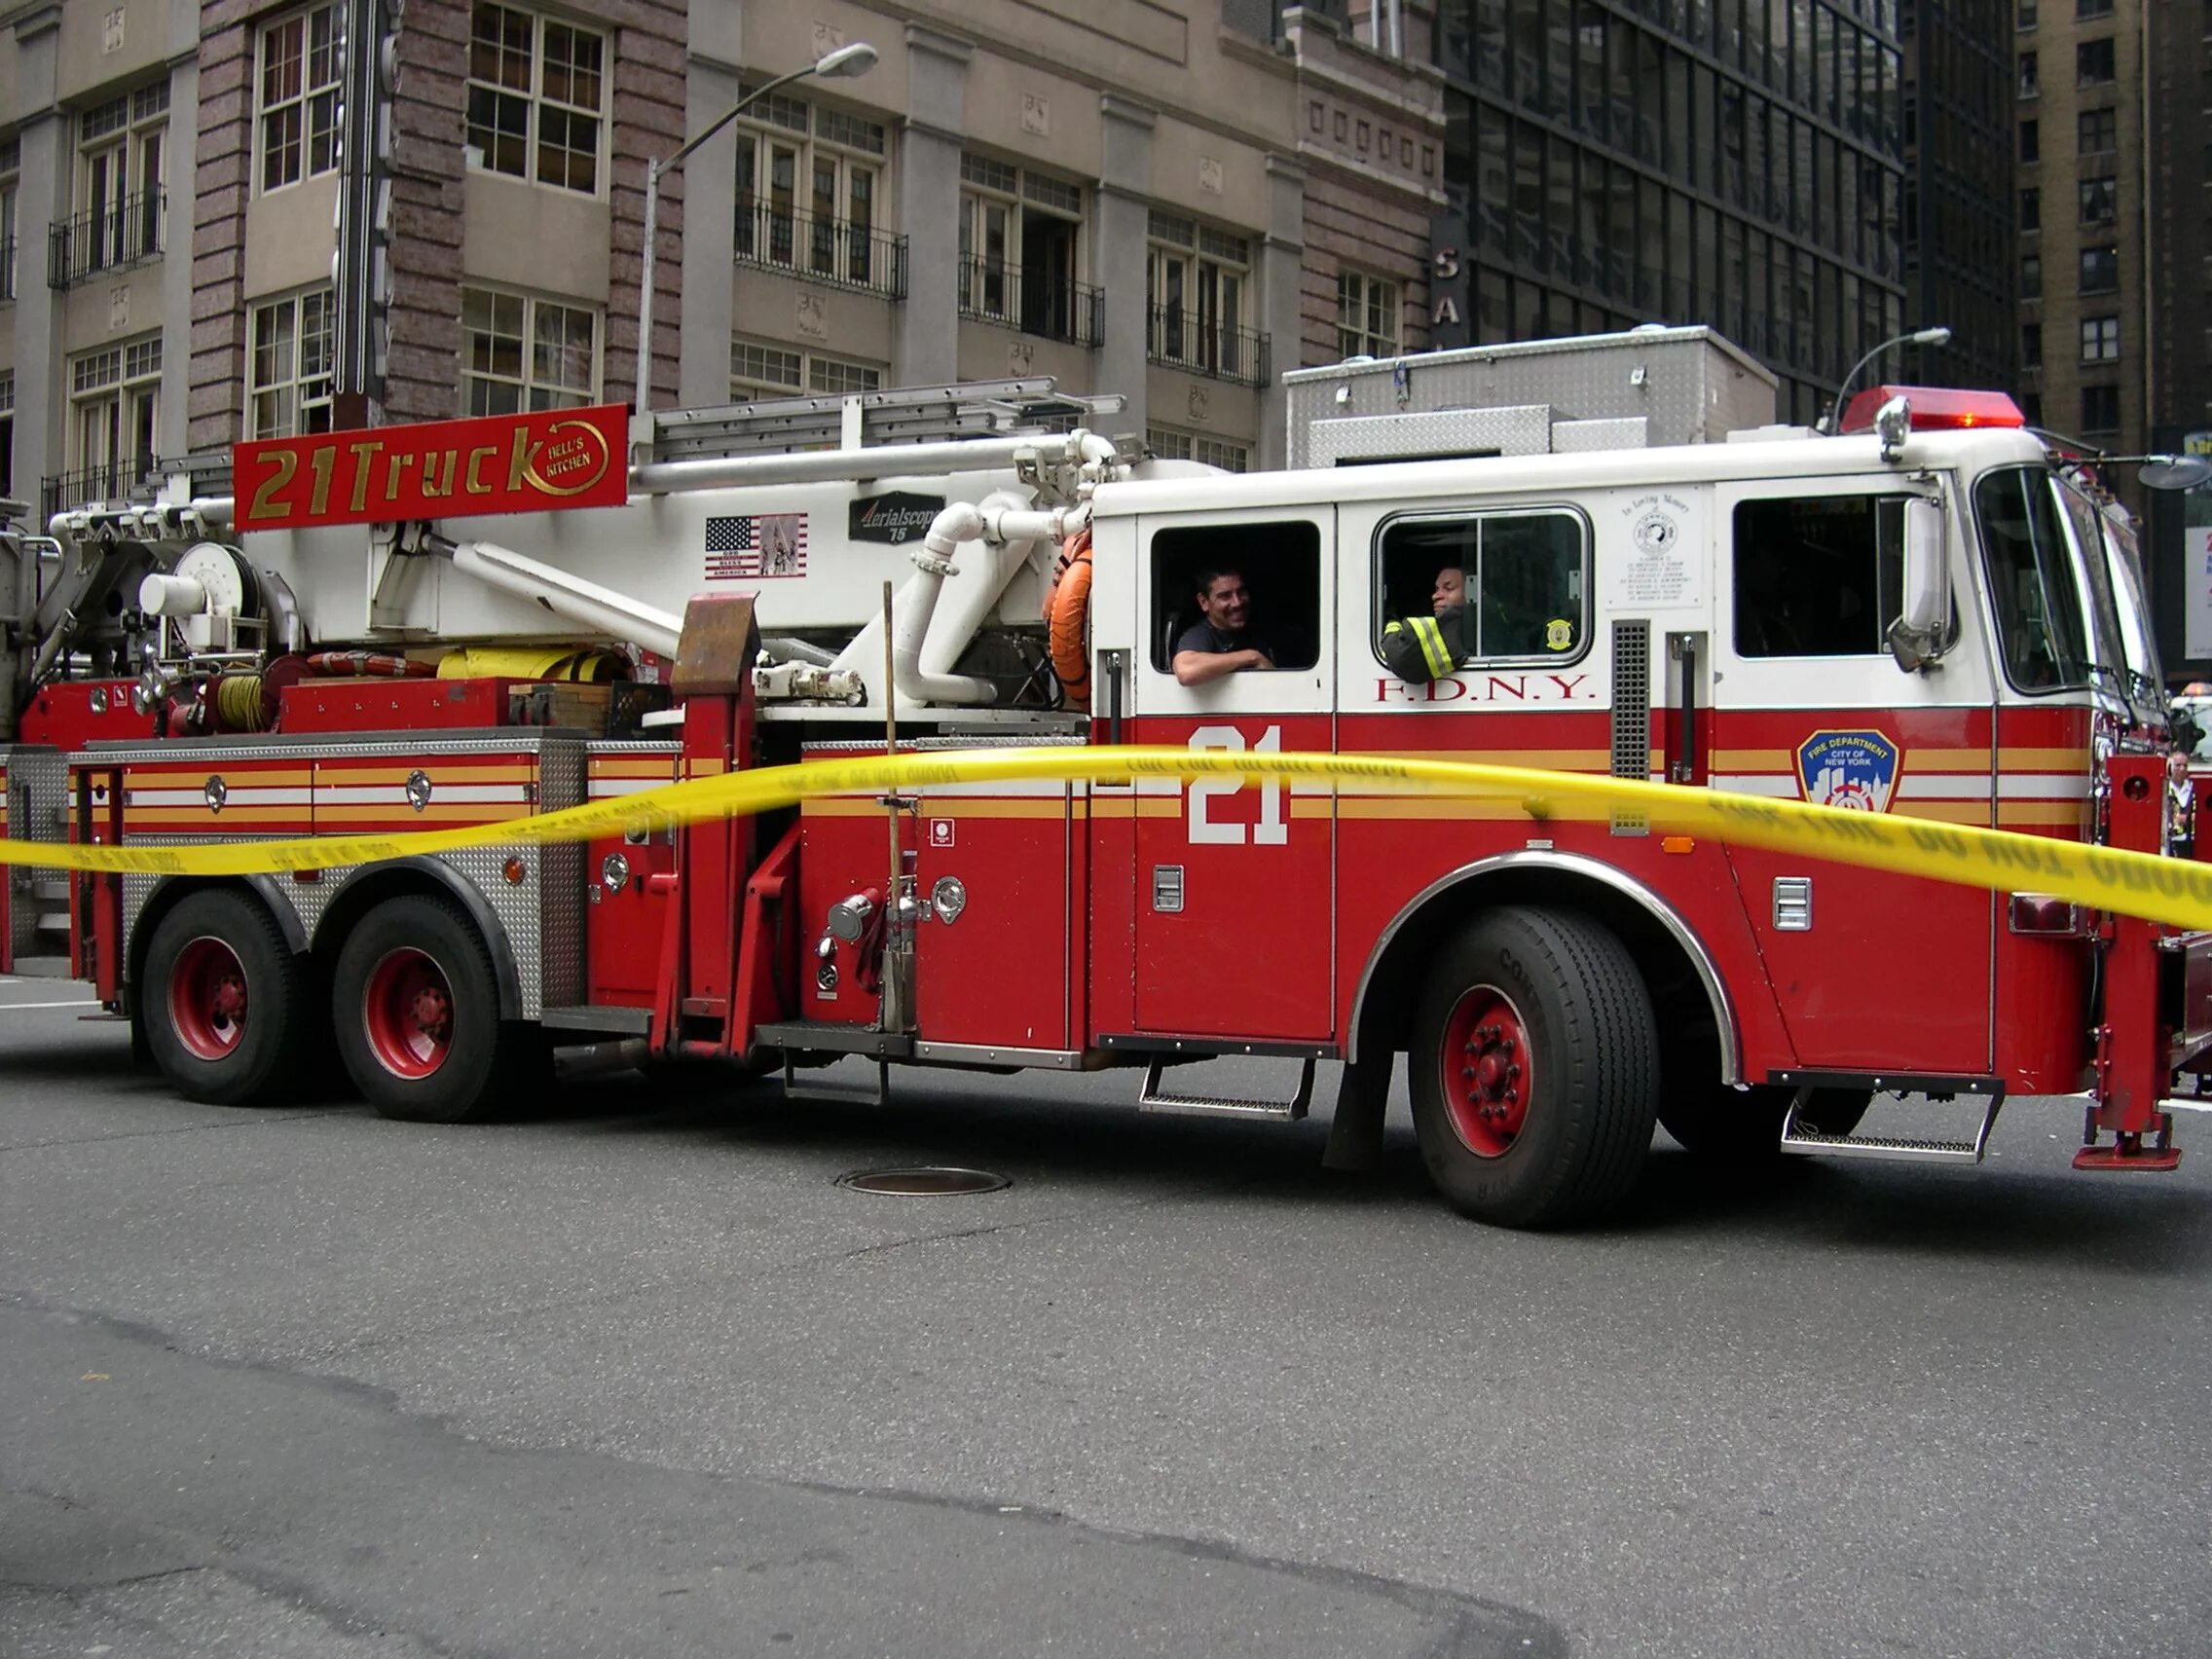 Машина "Fire Truck" пожарная, 49450. Пожарная машинка (20 см) Fire-Fighting vehicle. Fire engine пожарная машина. Американская пожарная машина.